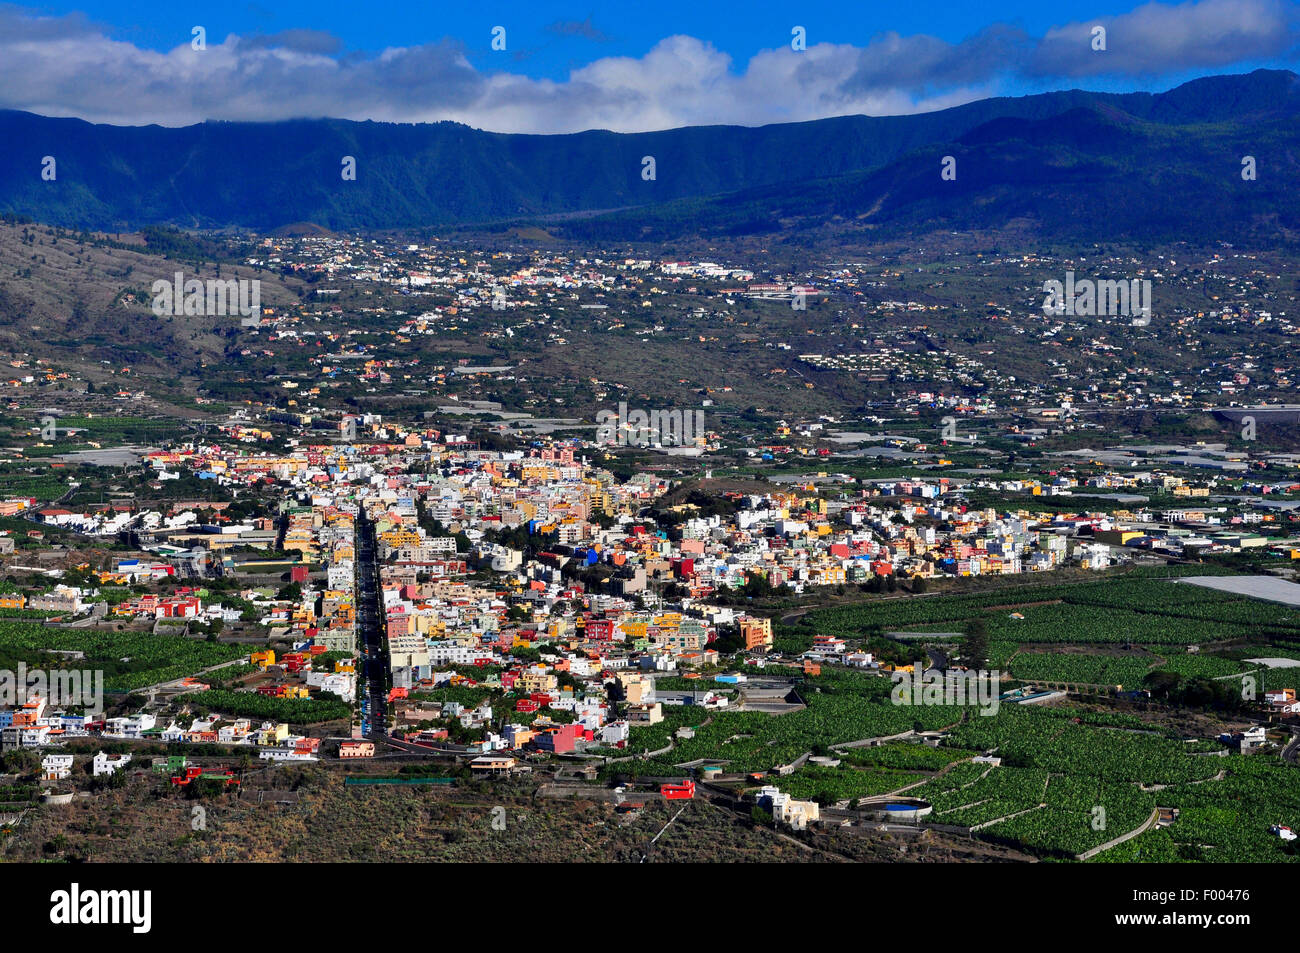 view from Mirador El Time to Tazacorte and Los Llanos de Aridane, Canary Islands, La Palma Stock Photo